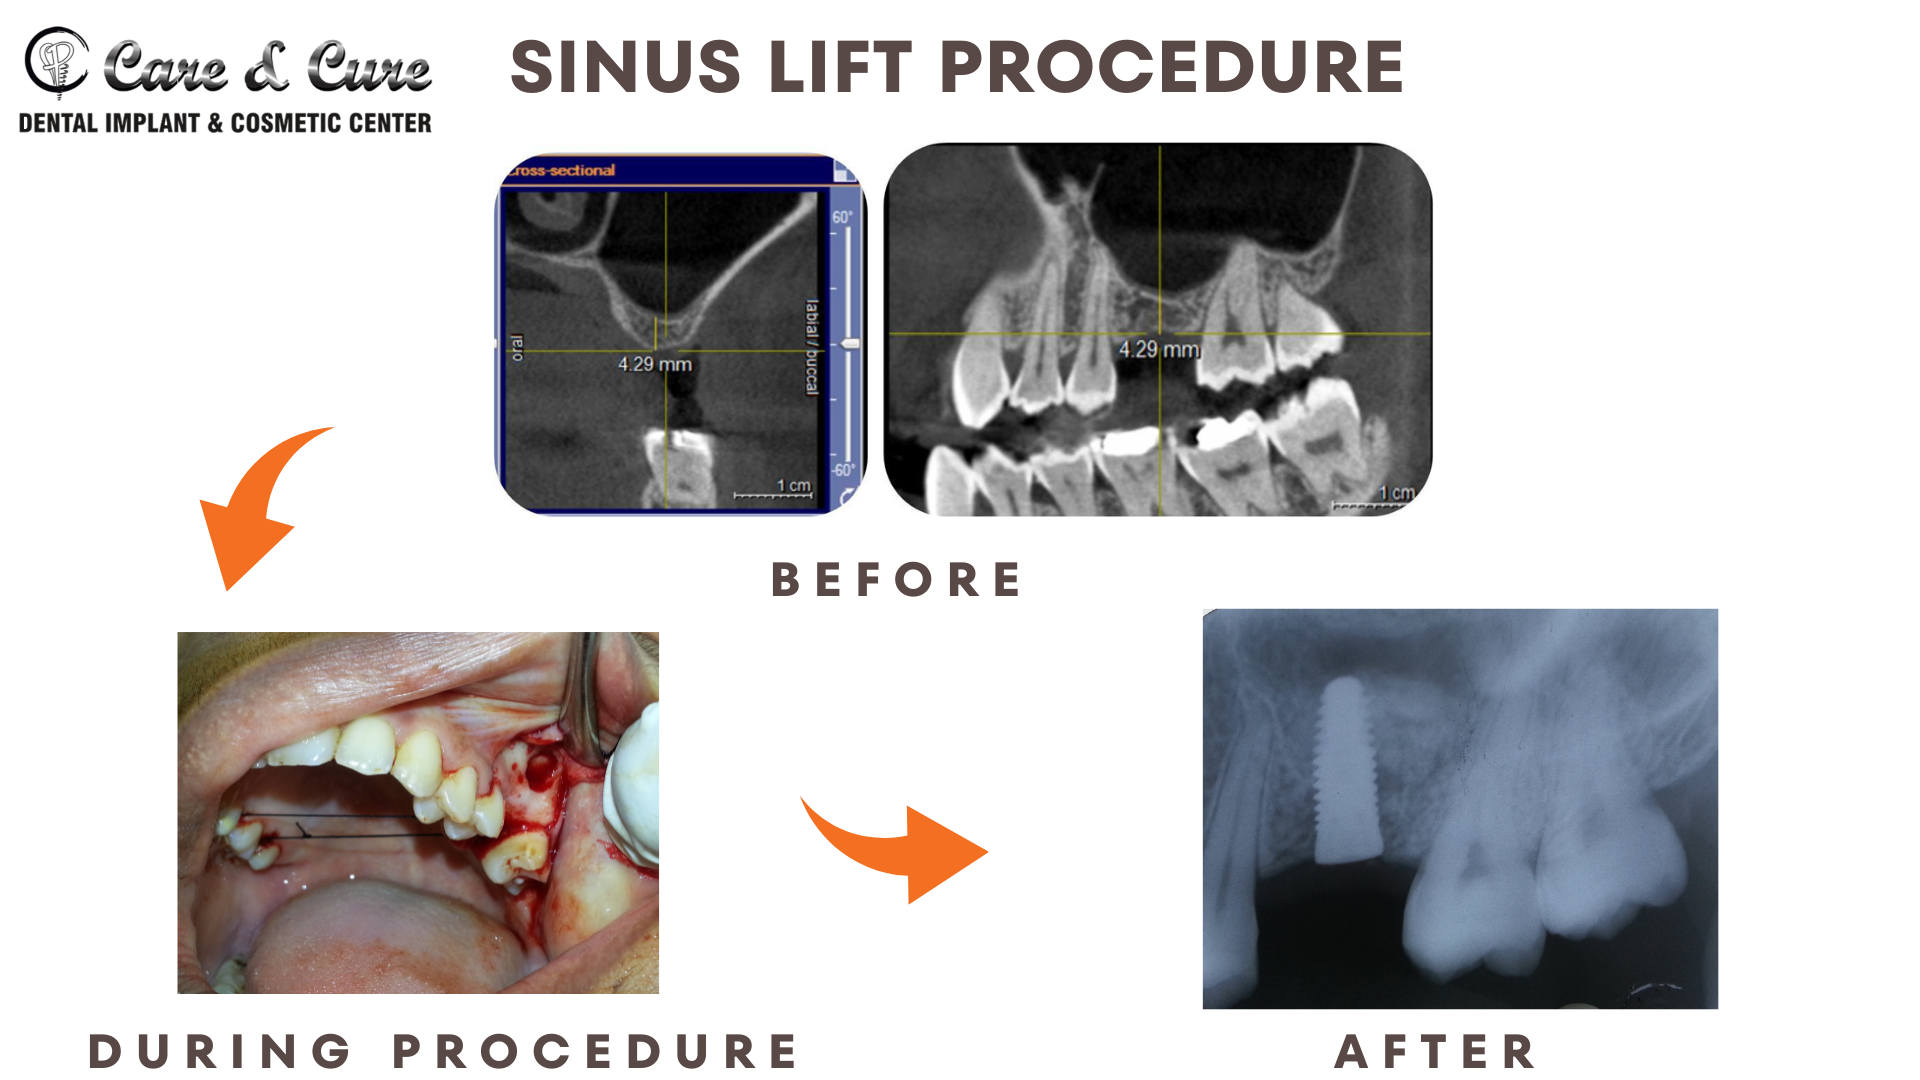 Sinus lift procedure